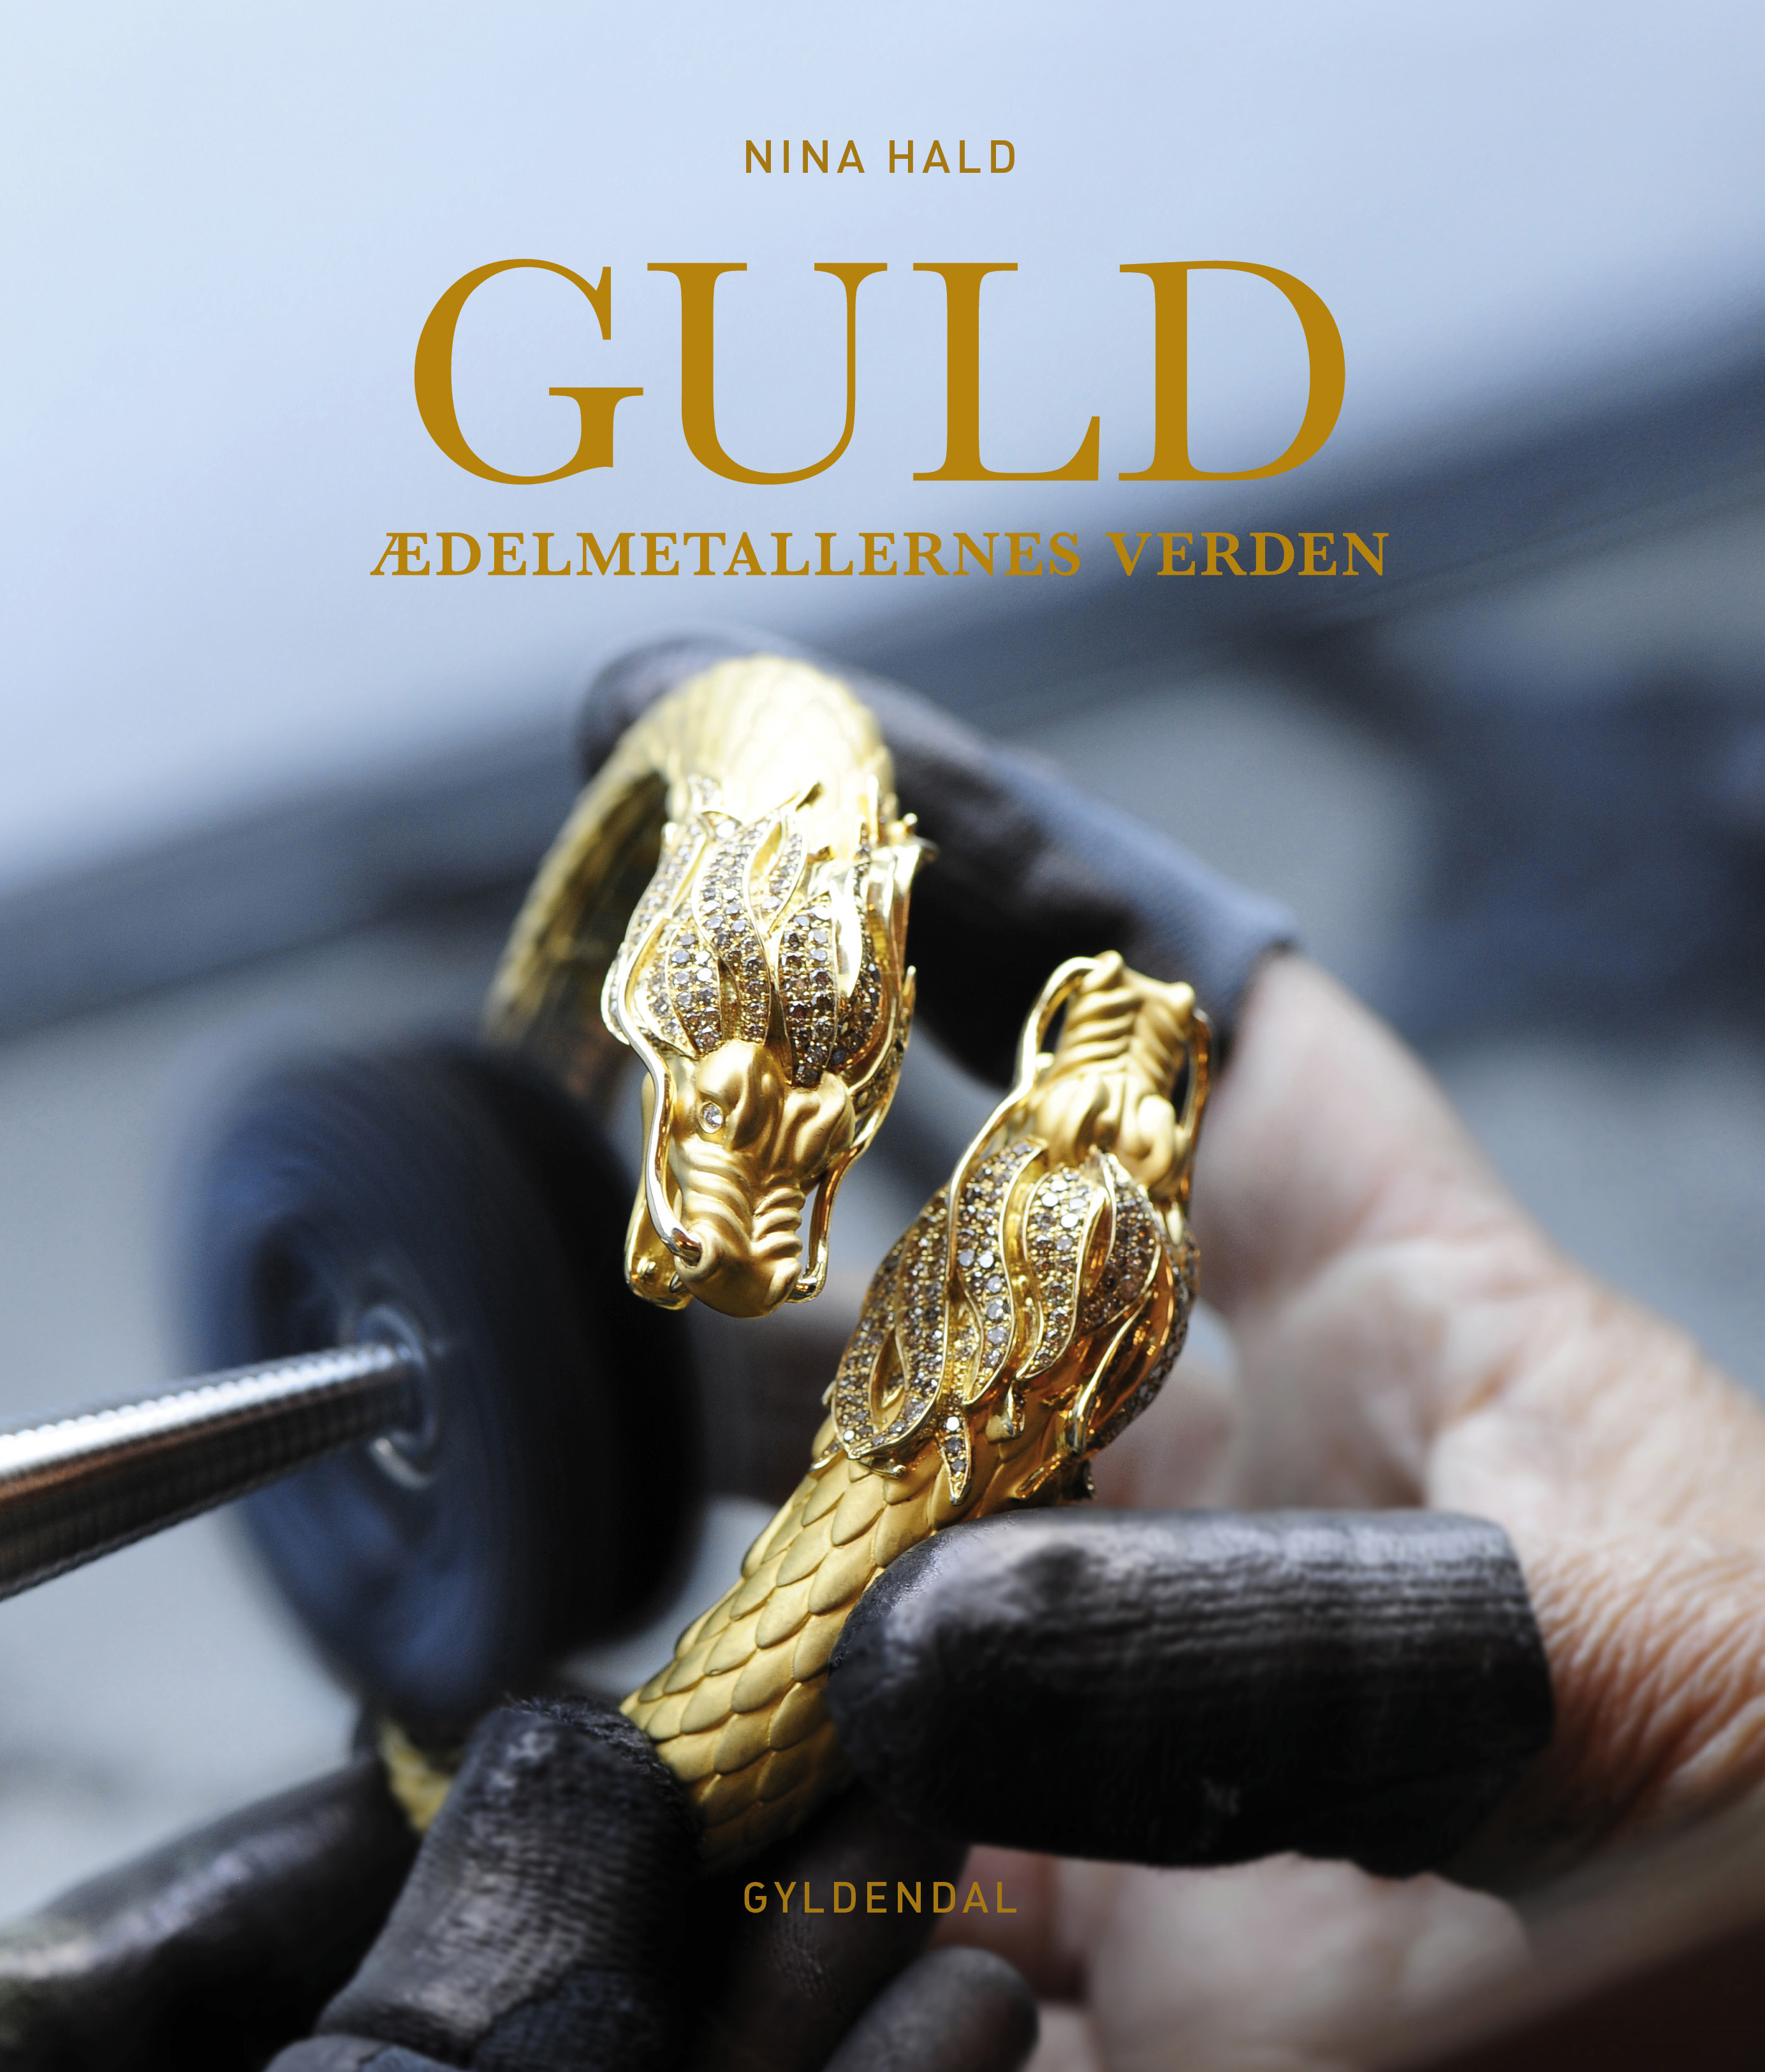 Guld af Nina Hald fra forlaget Gyldendahl.